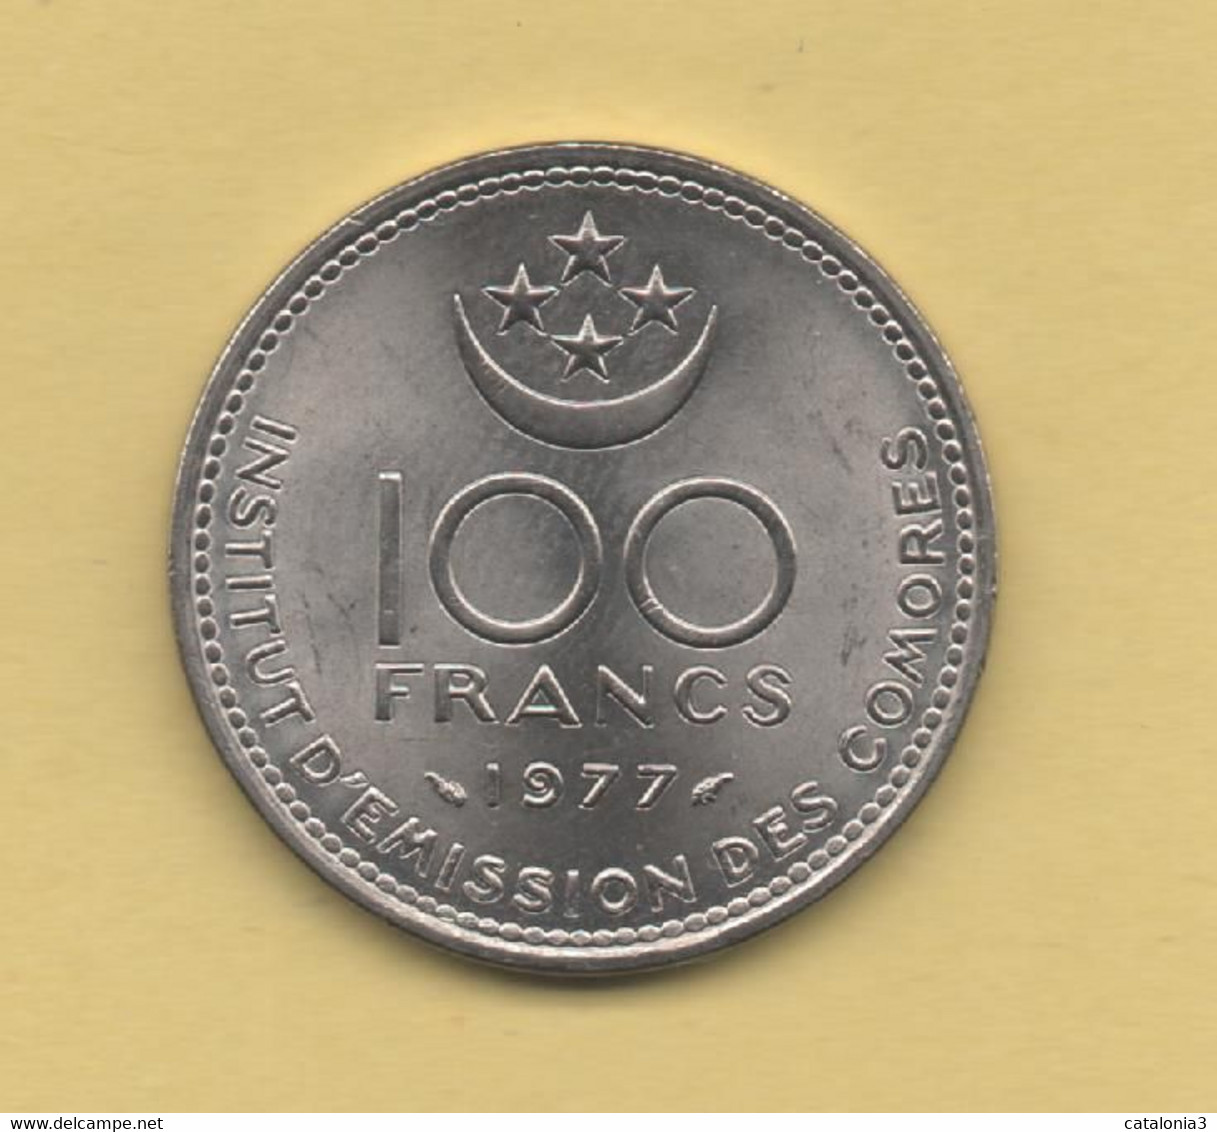 COMORES - 100 Francs 1977 - Comoros